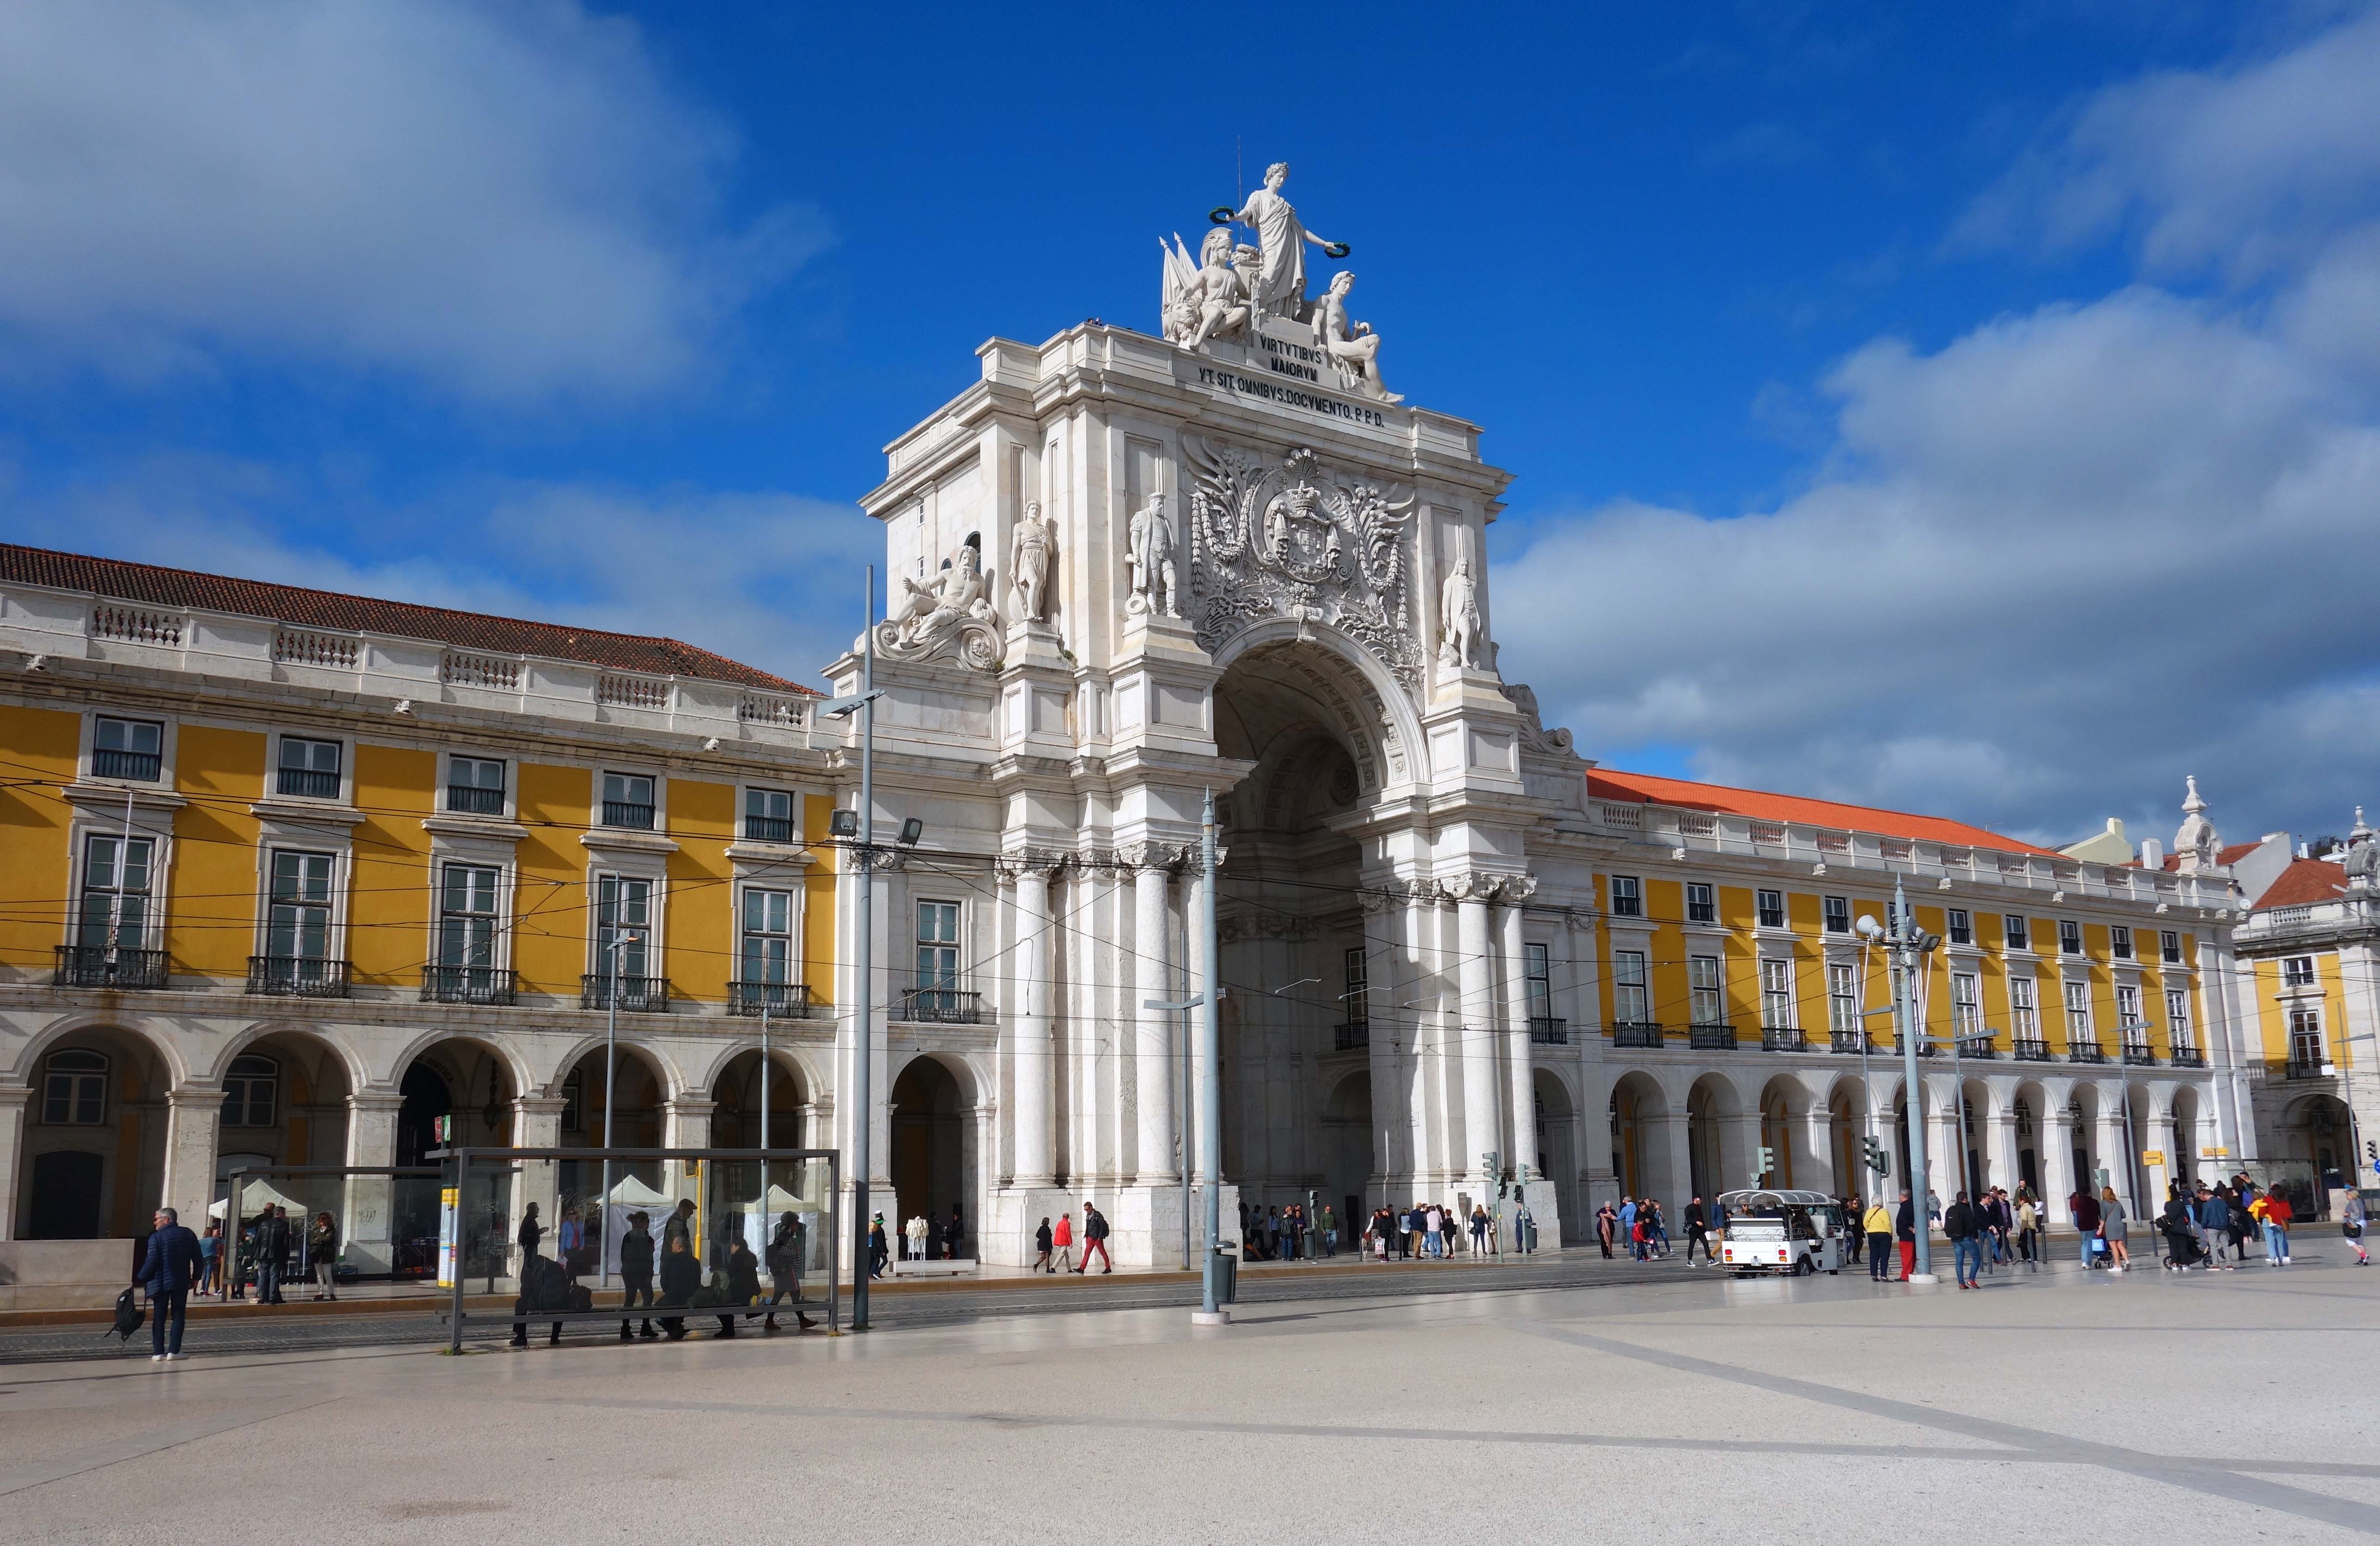 Anstehende Ereignisse In Lissabon